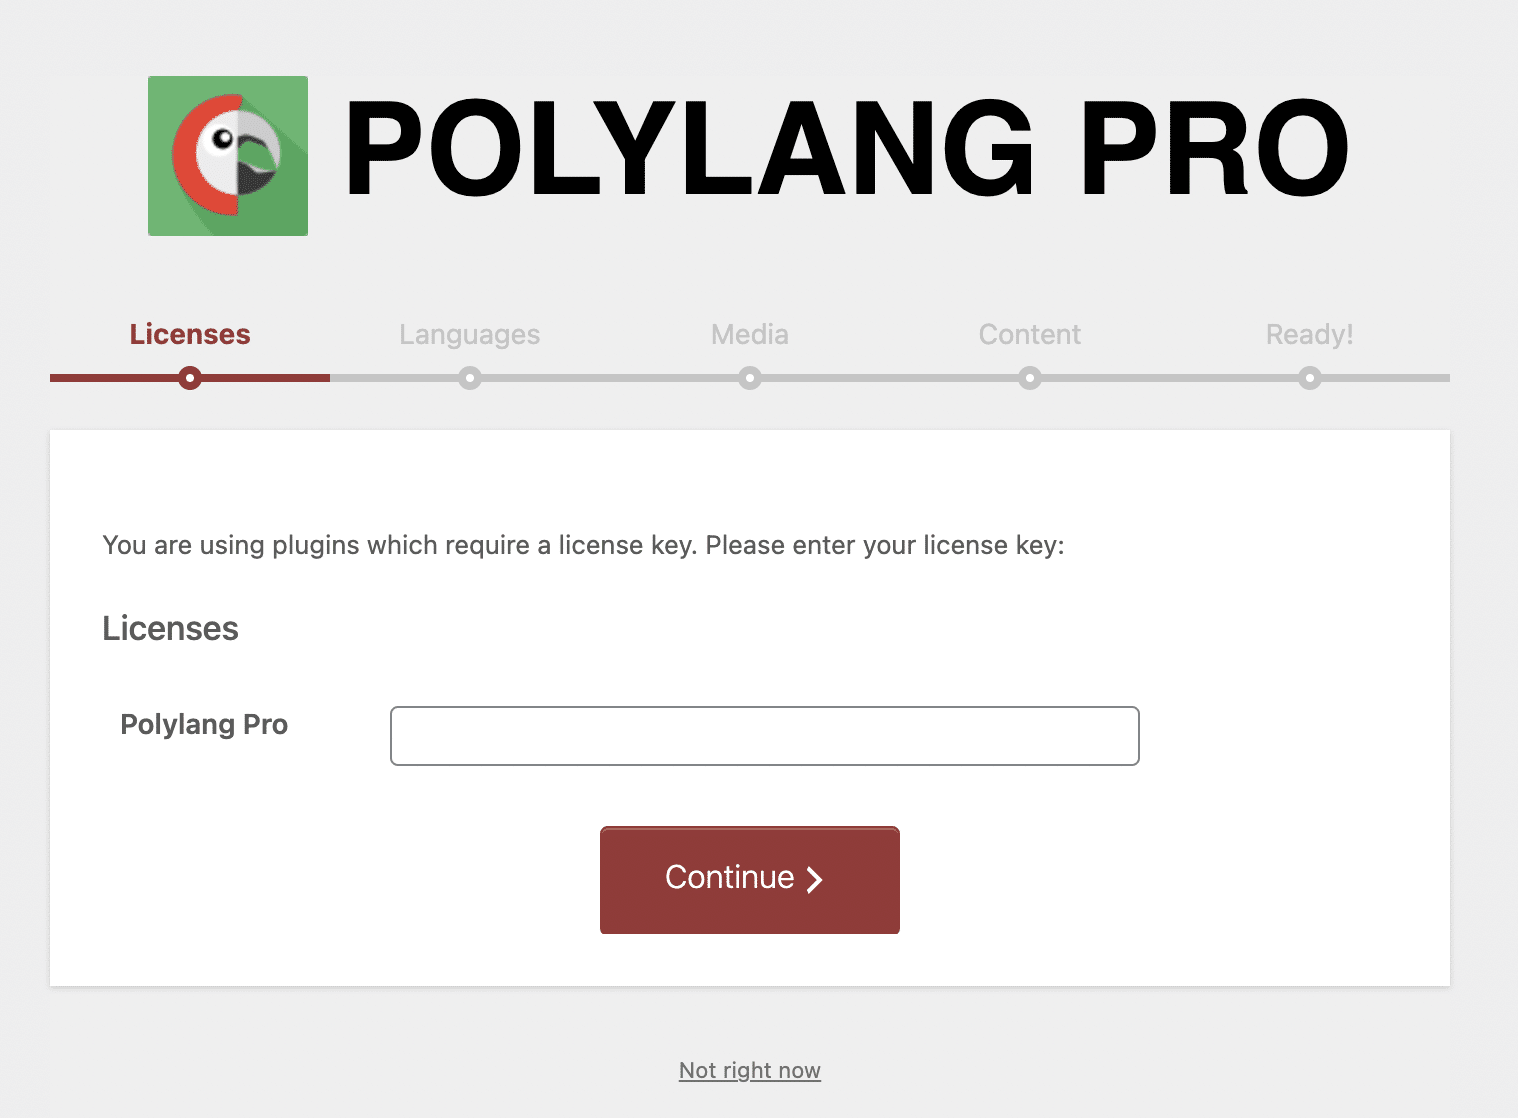 Polylang Pro license key.